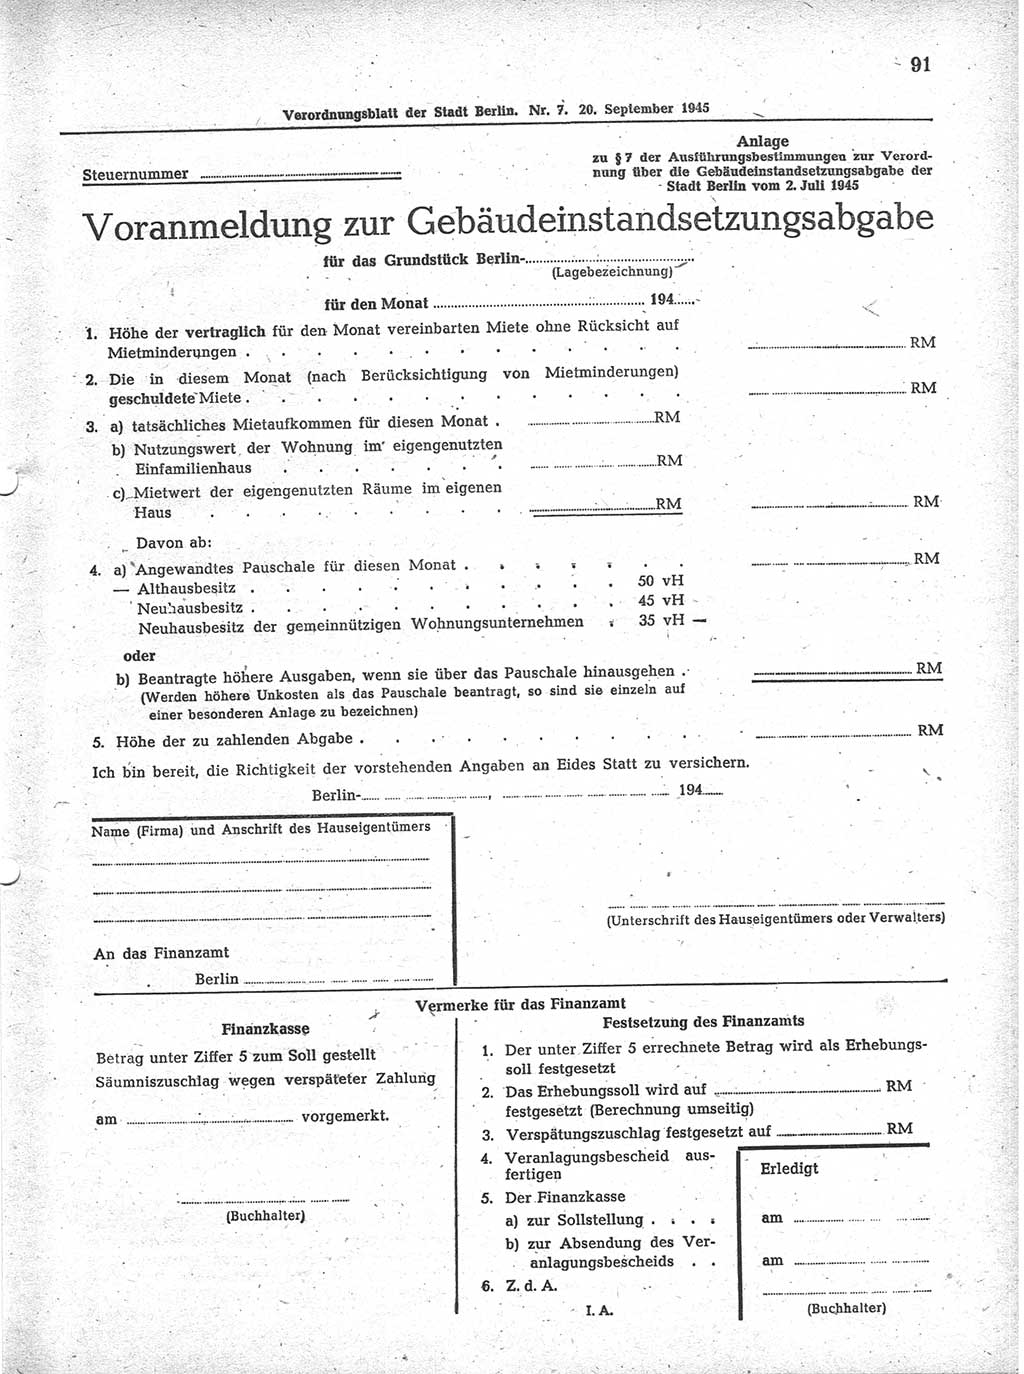 Verordnungsblatt (VOBl.) der Stadt Berlin 1945, Seite 91 (VOBl. Bln. 1945, S. 91)